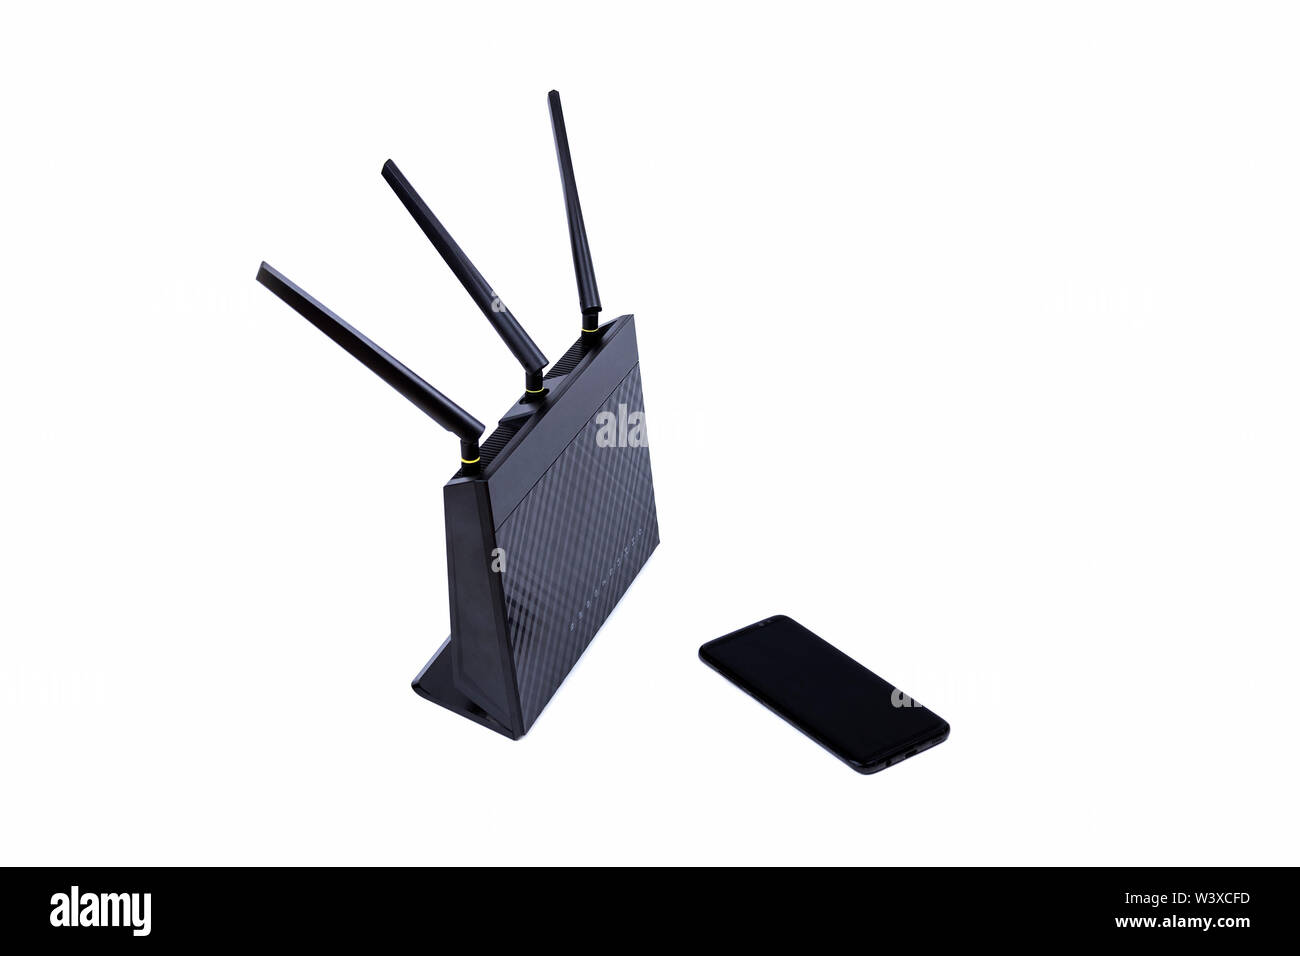 Schwarz wireless WLAN Router Kabel Modem und einem modernen kein Name  smartphone isoliert auf Weiss. Die Internetverbindung und die Allgemeinen  einfachen Netzwerktopologie Stockfotografie - Alamy